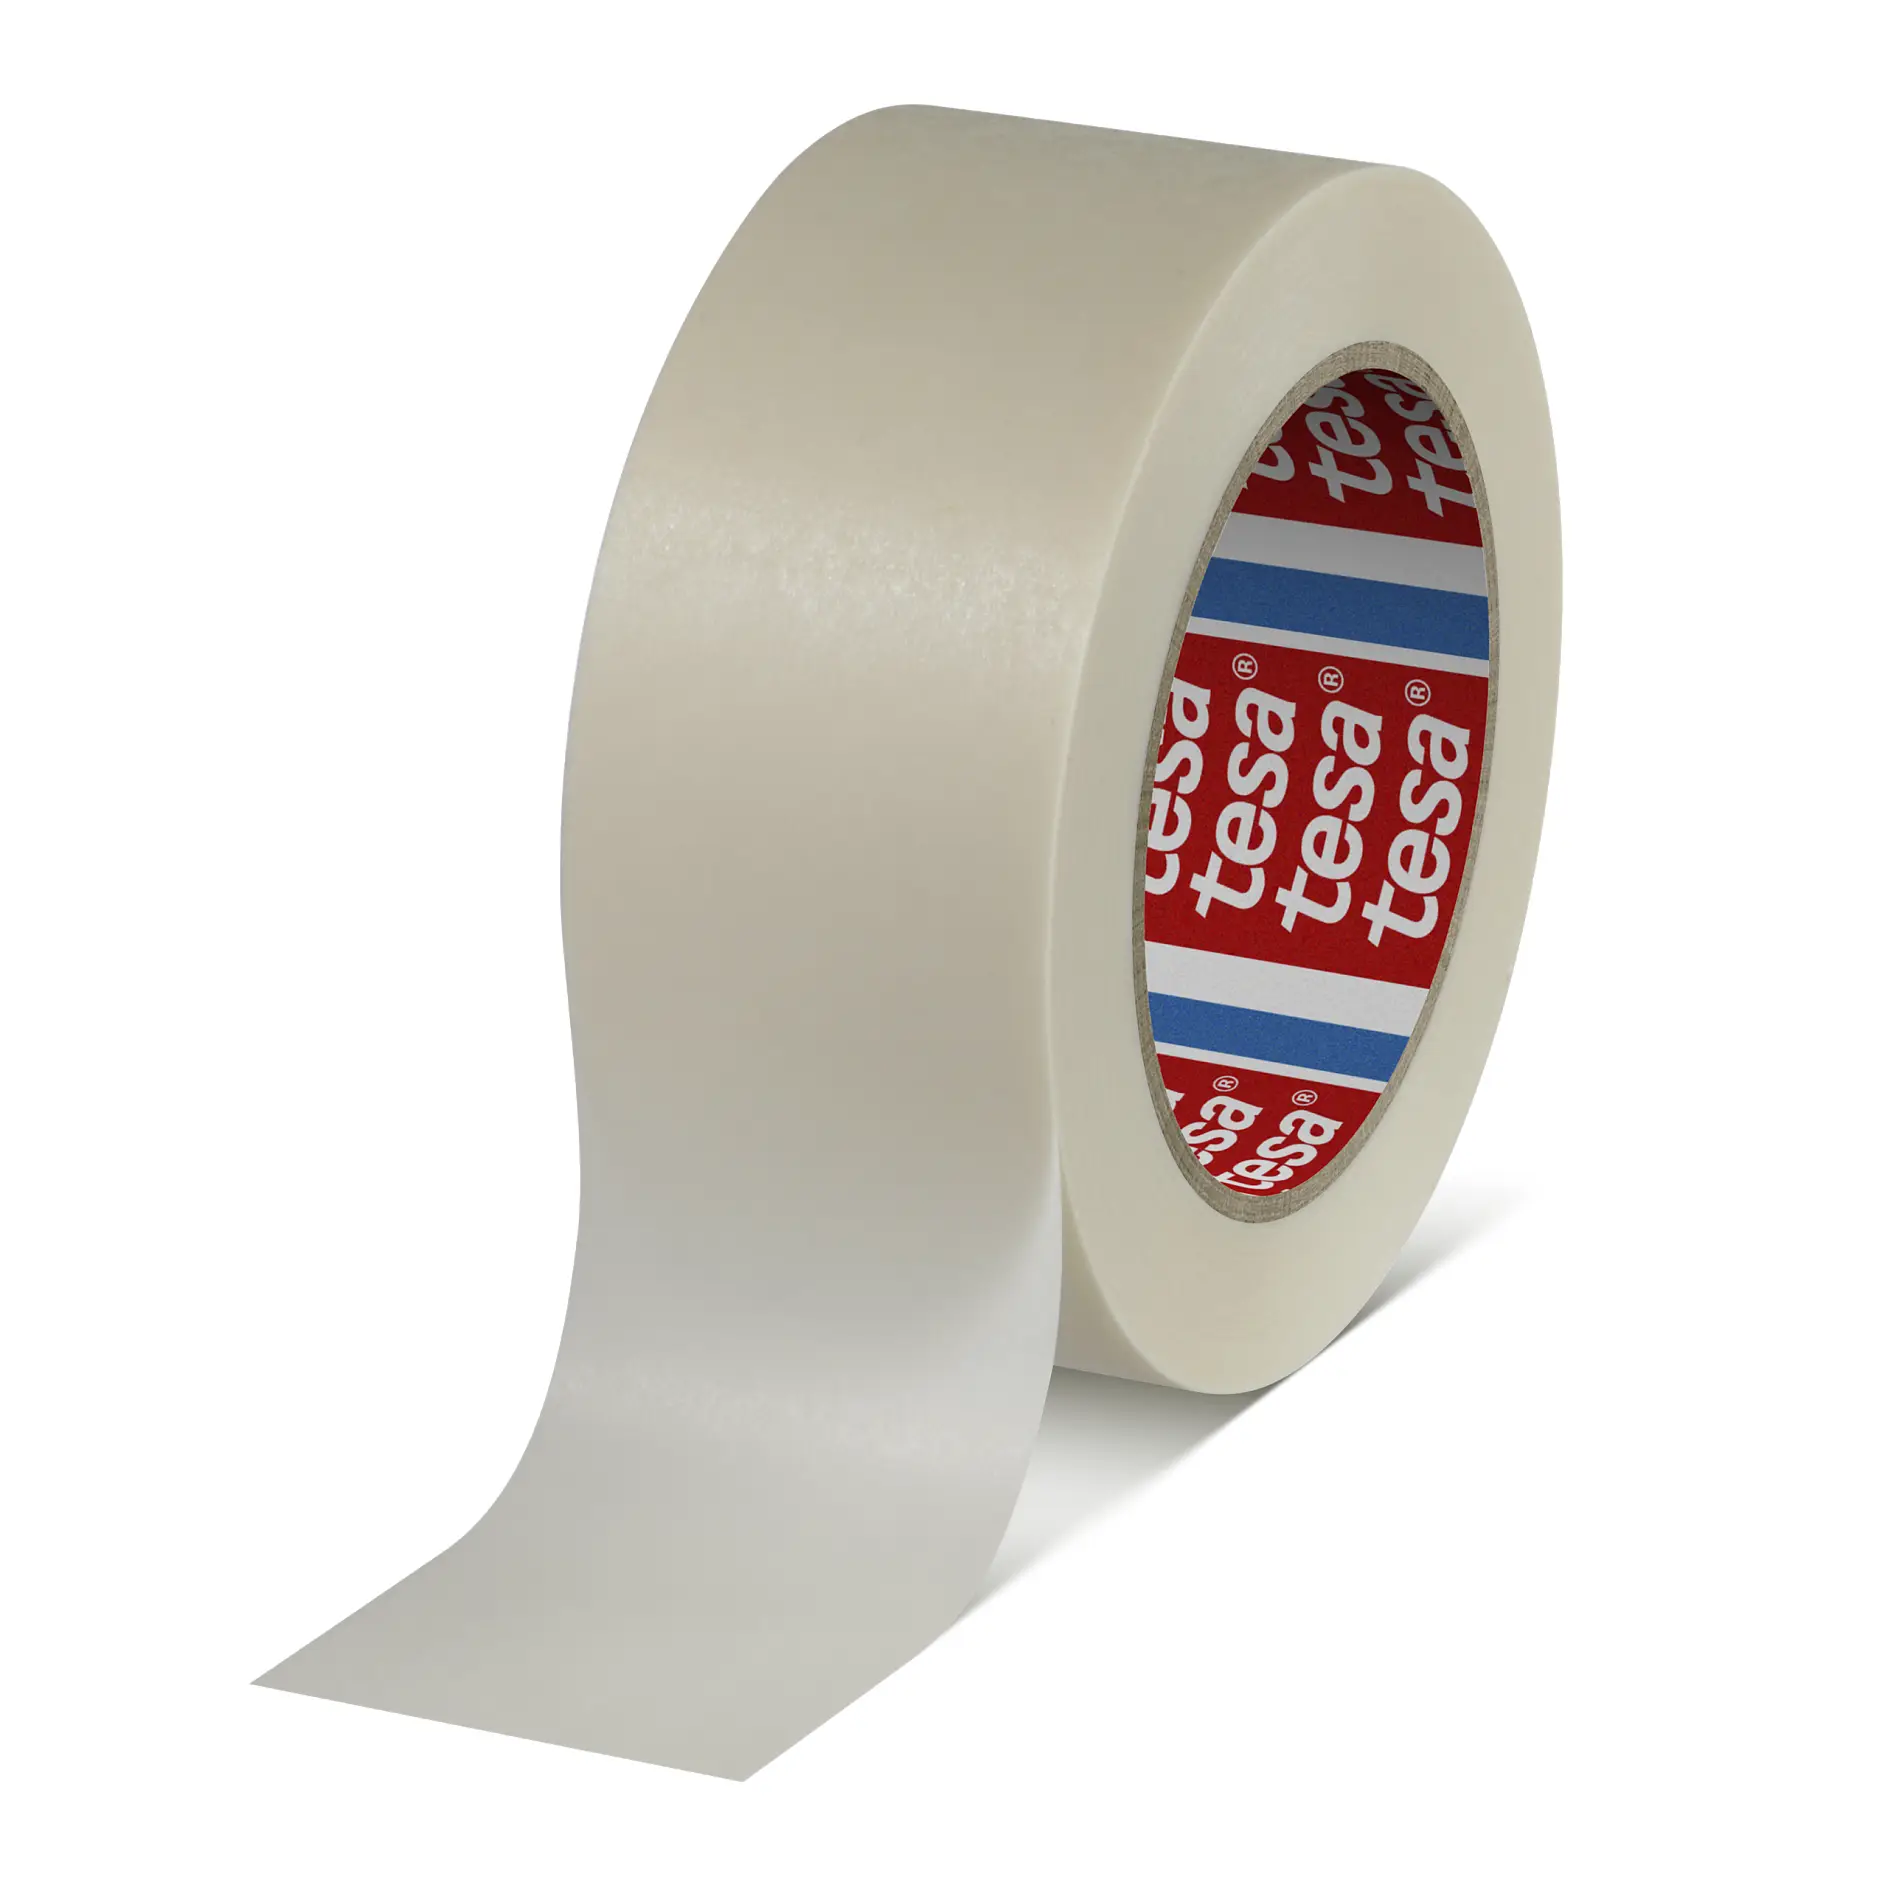 tesa-4331-high-temperature-masking-tape-white-043310001200-pr